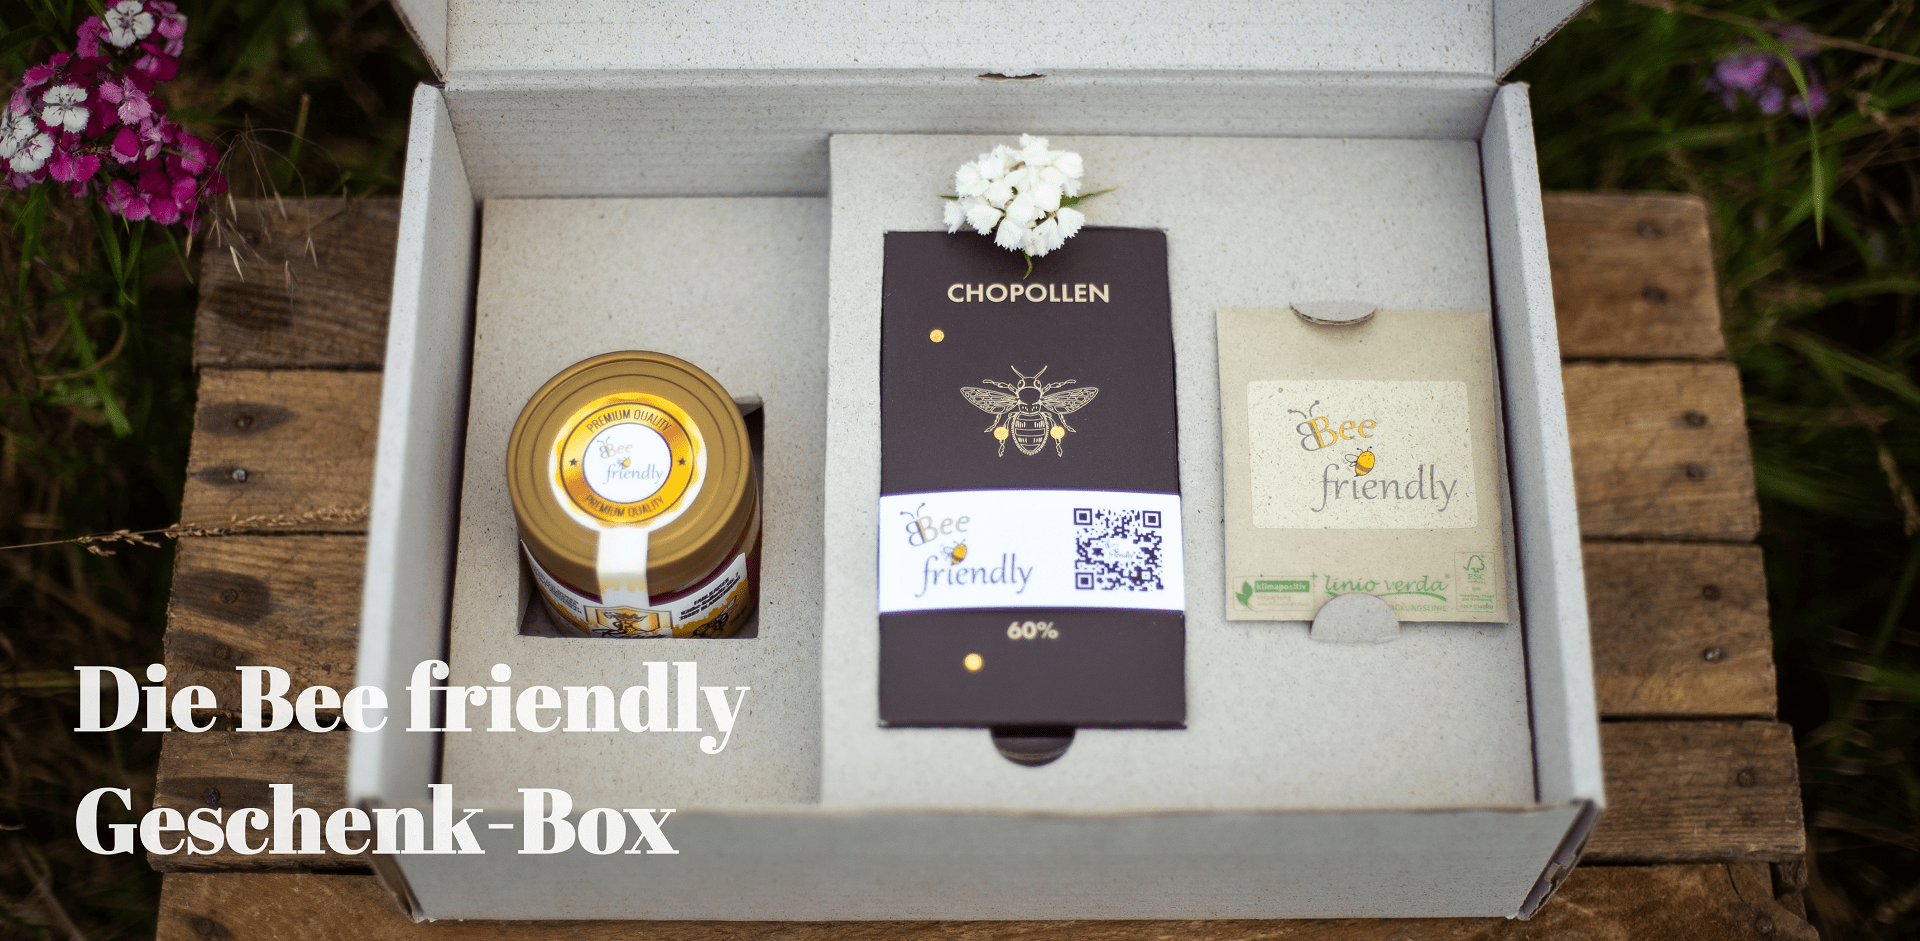 Bee_friendly_individualisierte_Geschenkbox